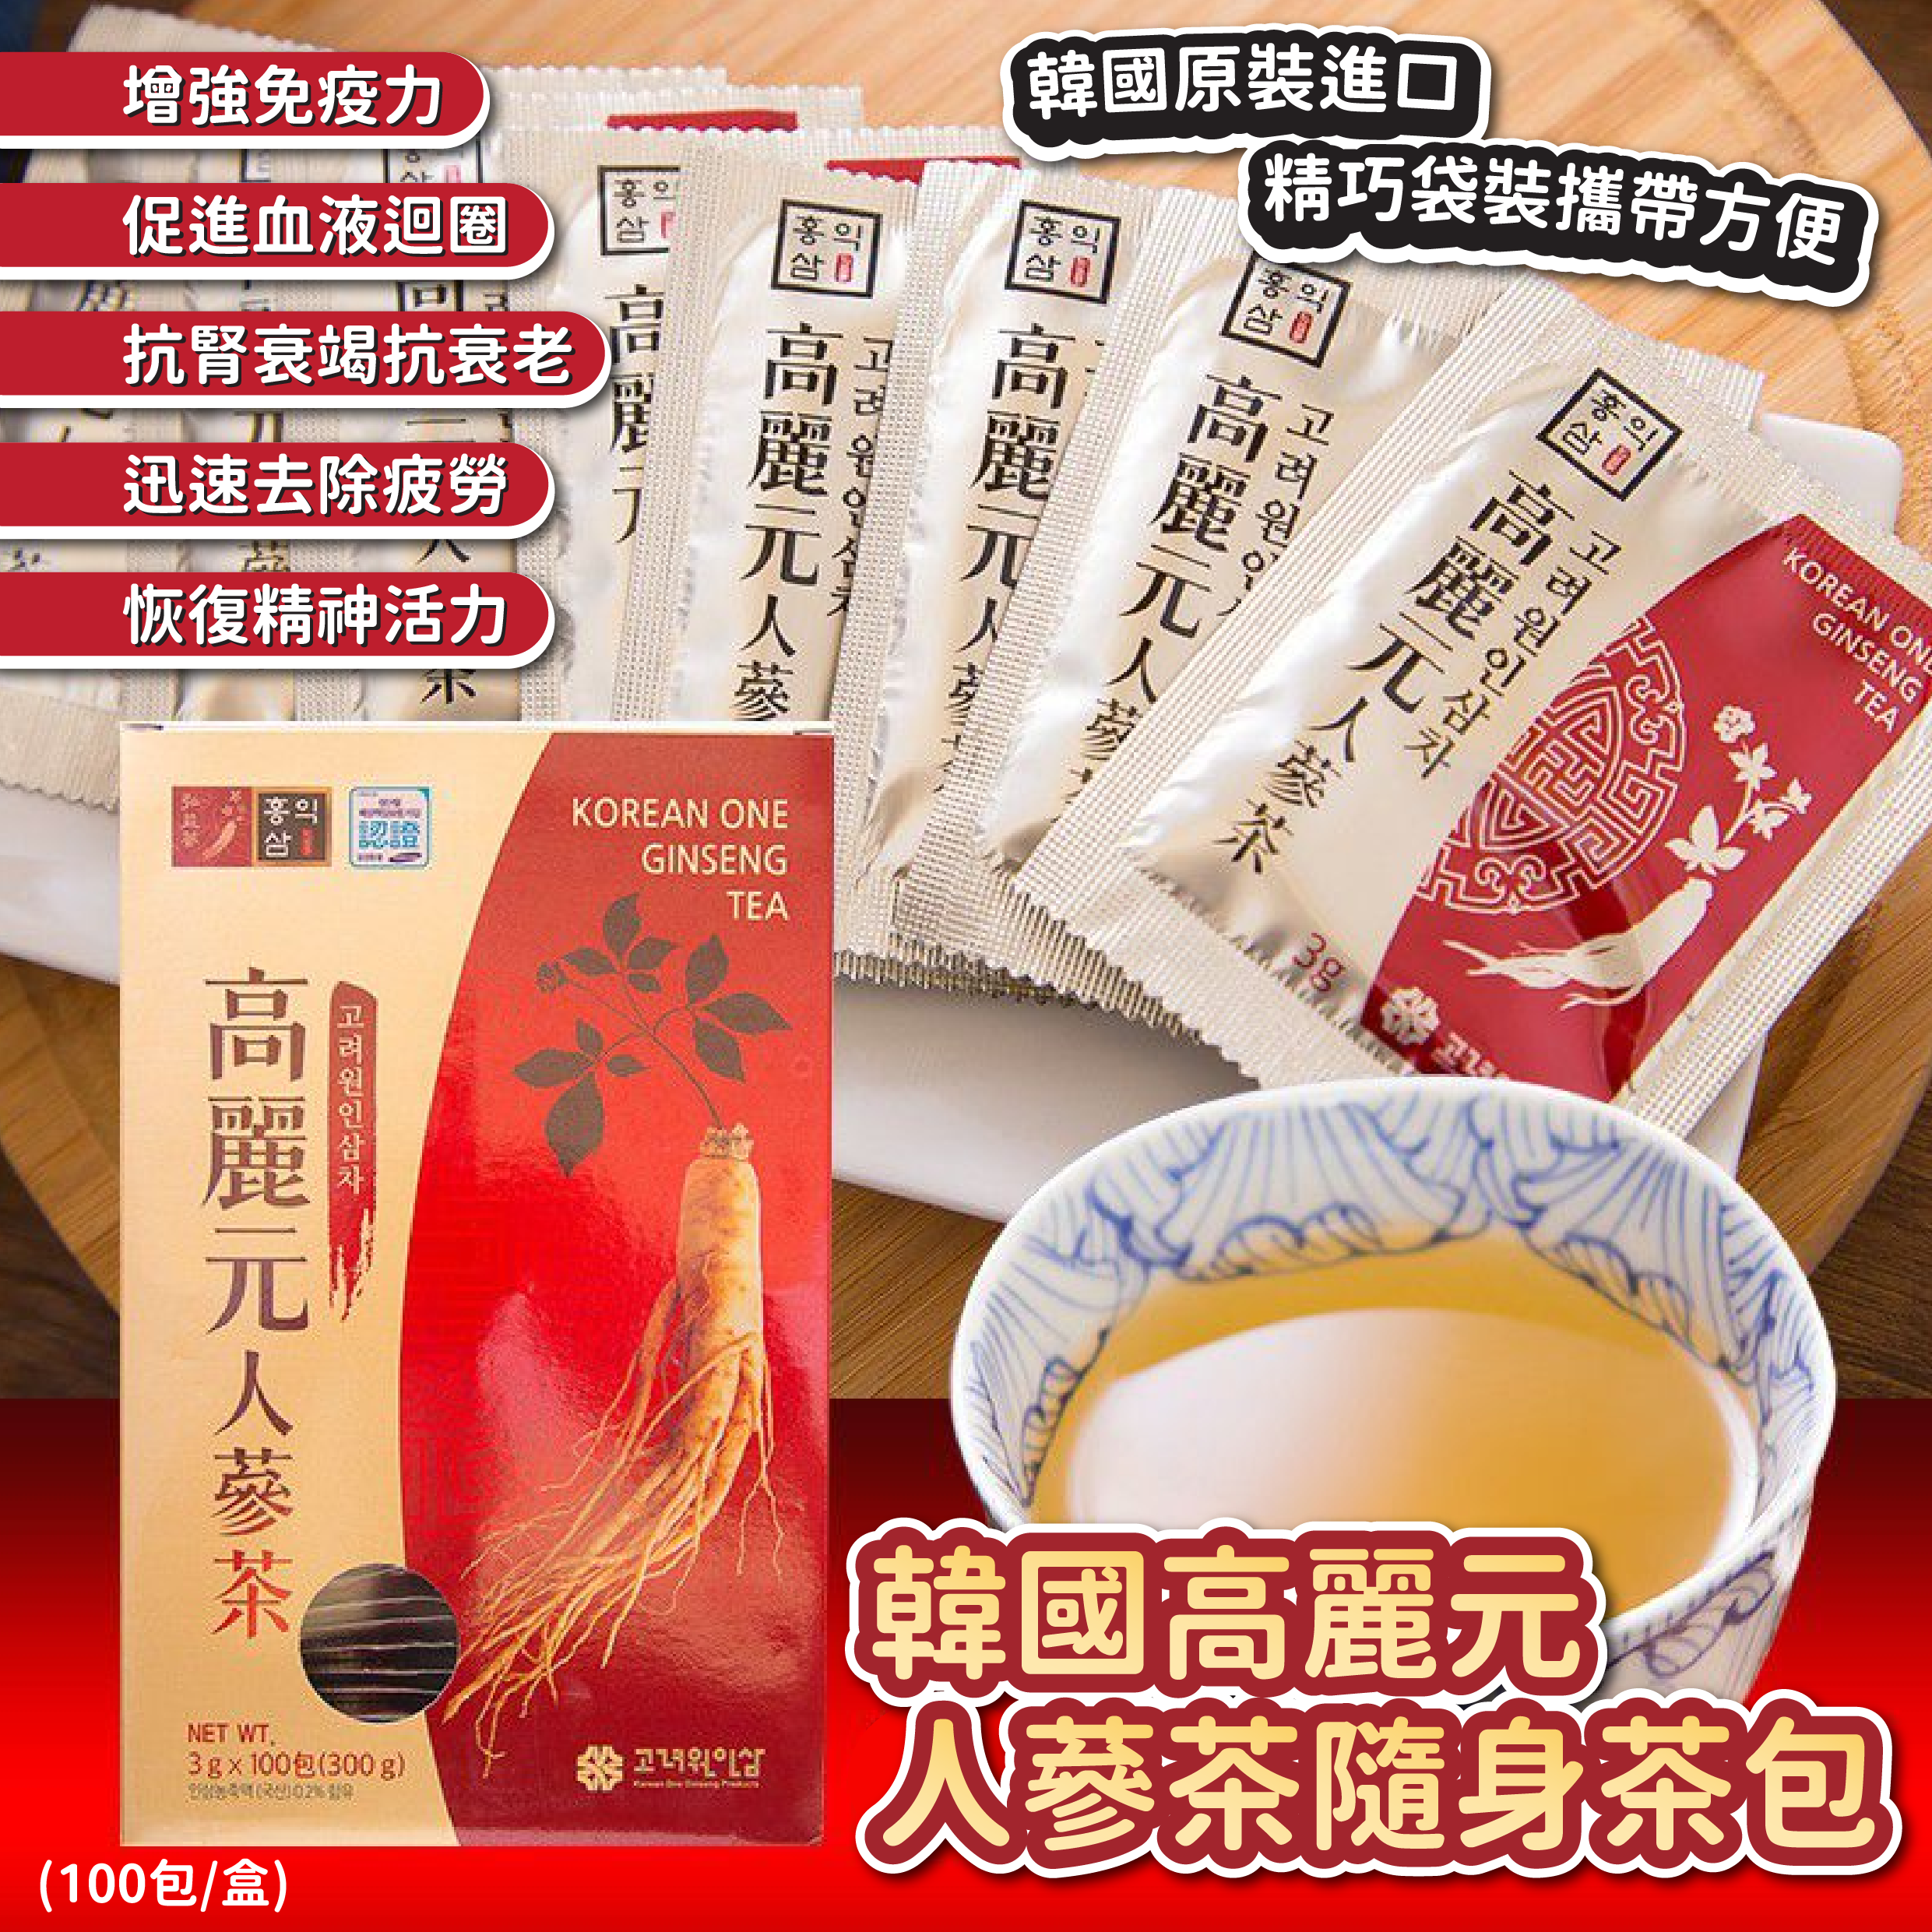 韓國高麗元人蔘茶隨身茶包(100包/盒)